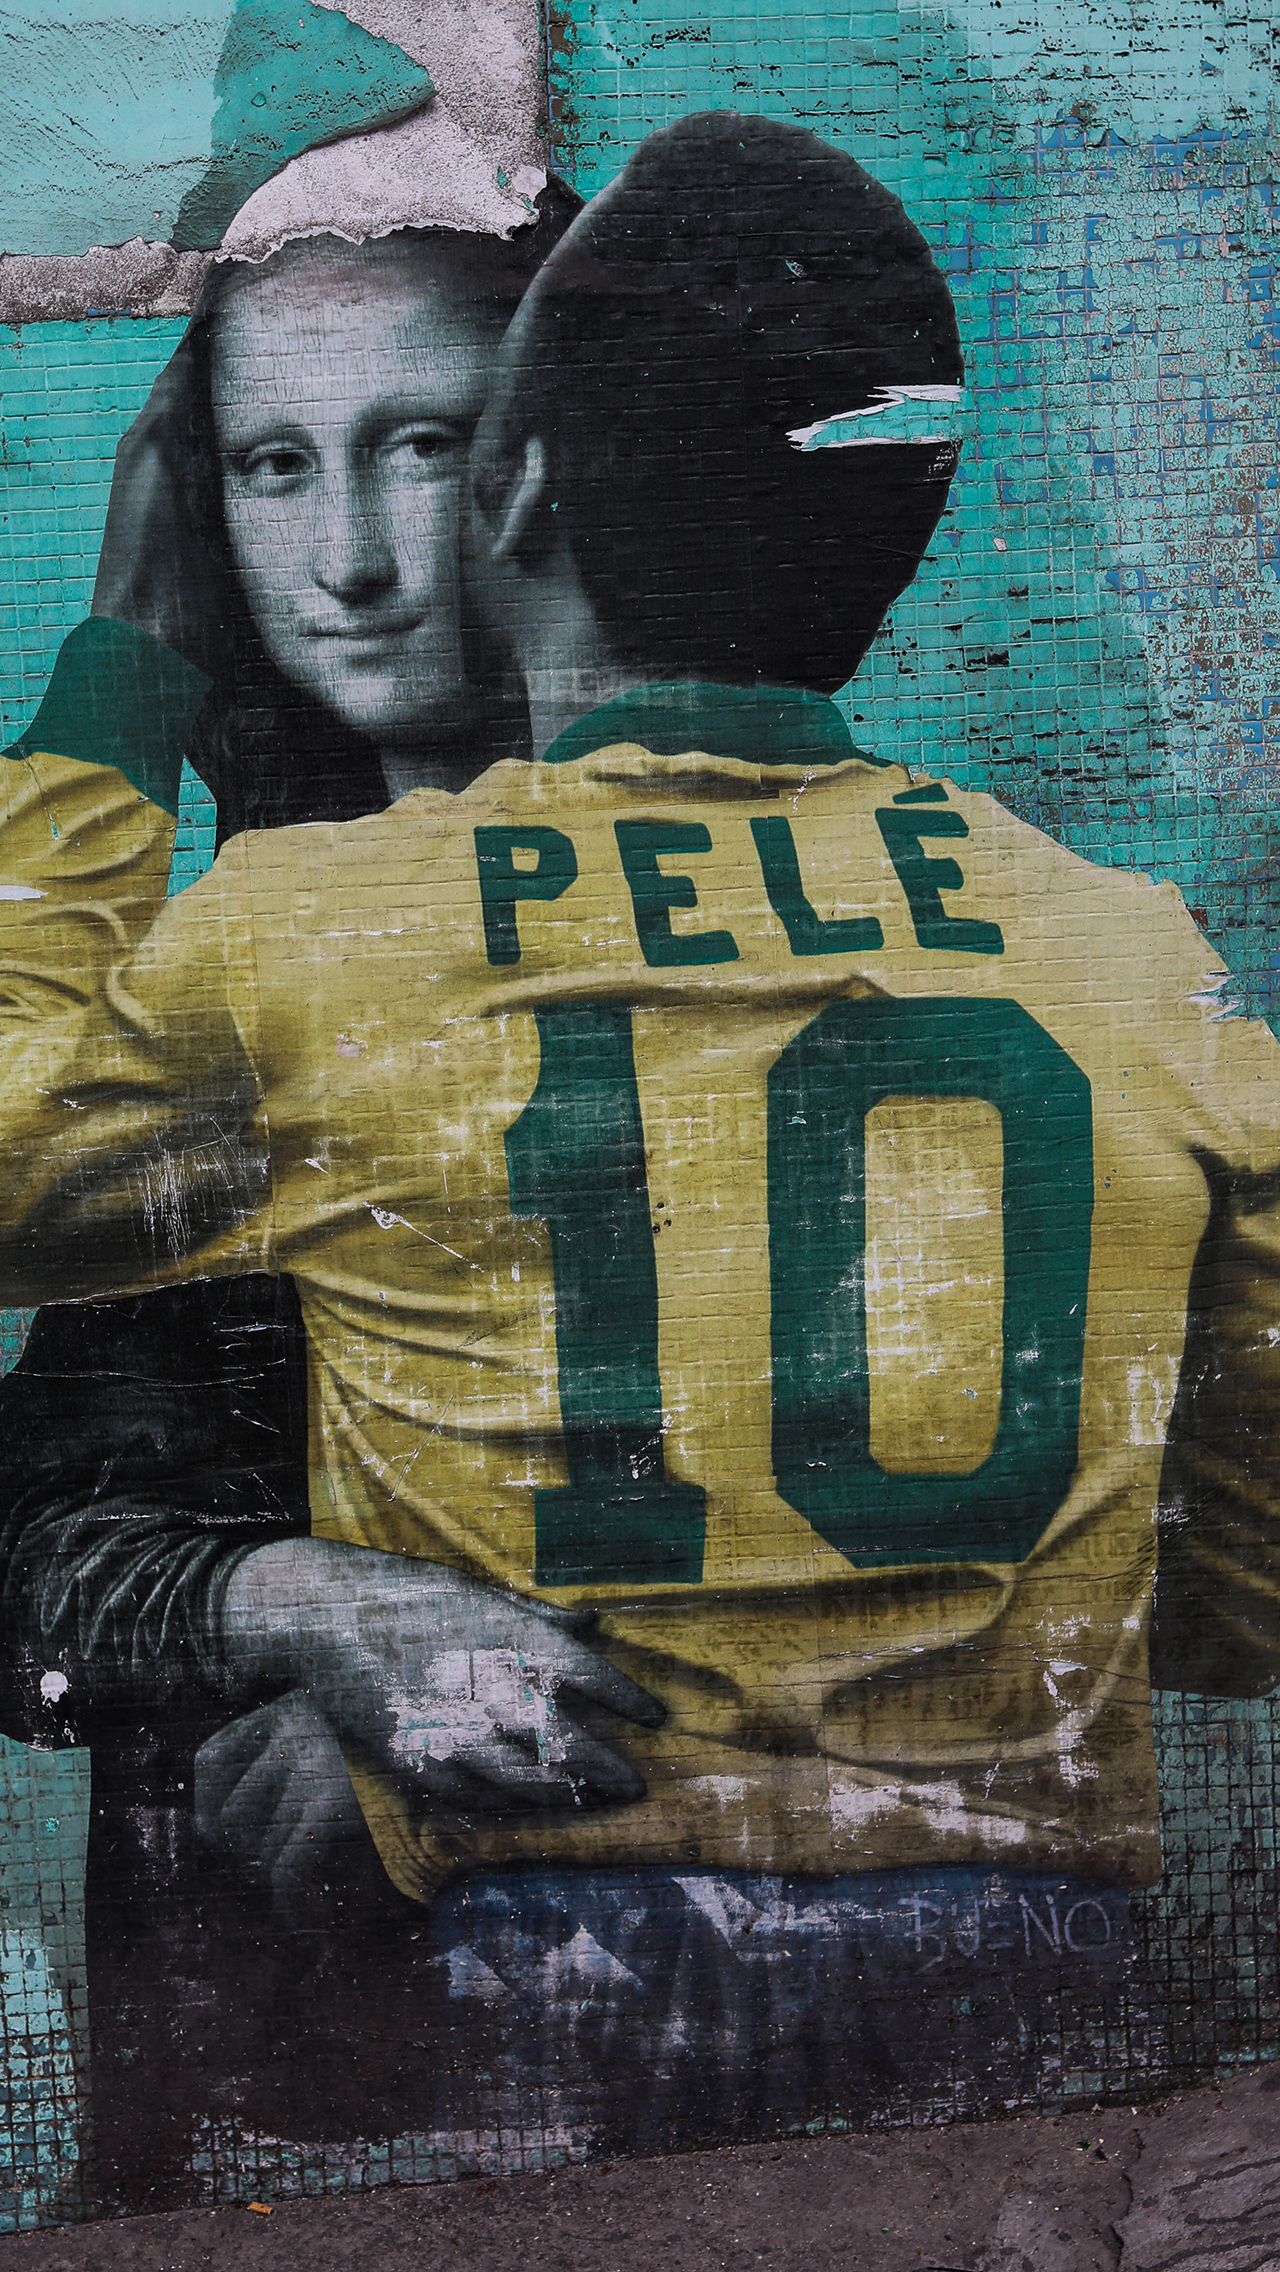 Смерть Пеле — трагедия для всего мира, но особенно для его семьи. Дети легендарного футболиста проводили последние дни с отцом, чтобы тот мог с ними проститься.